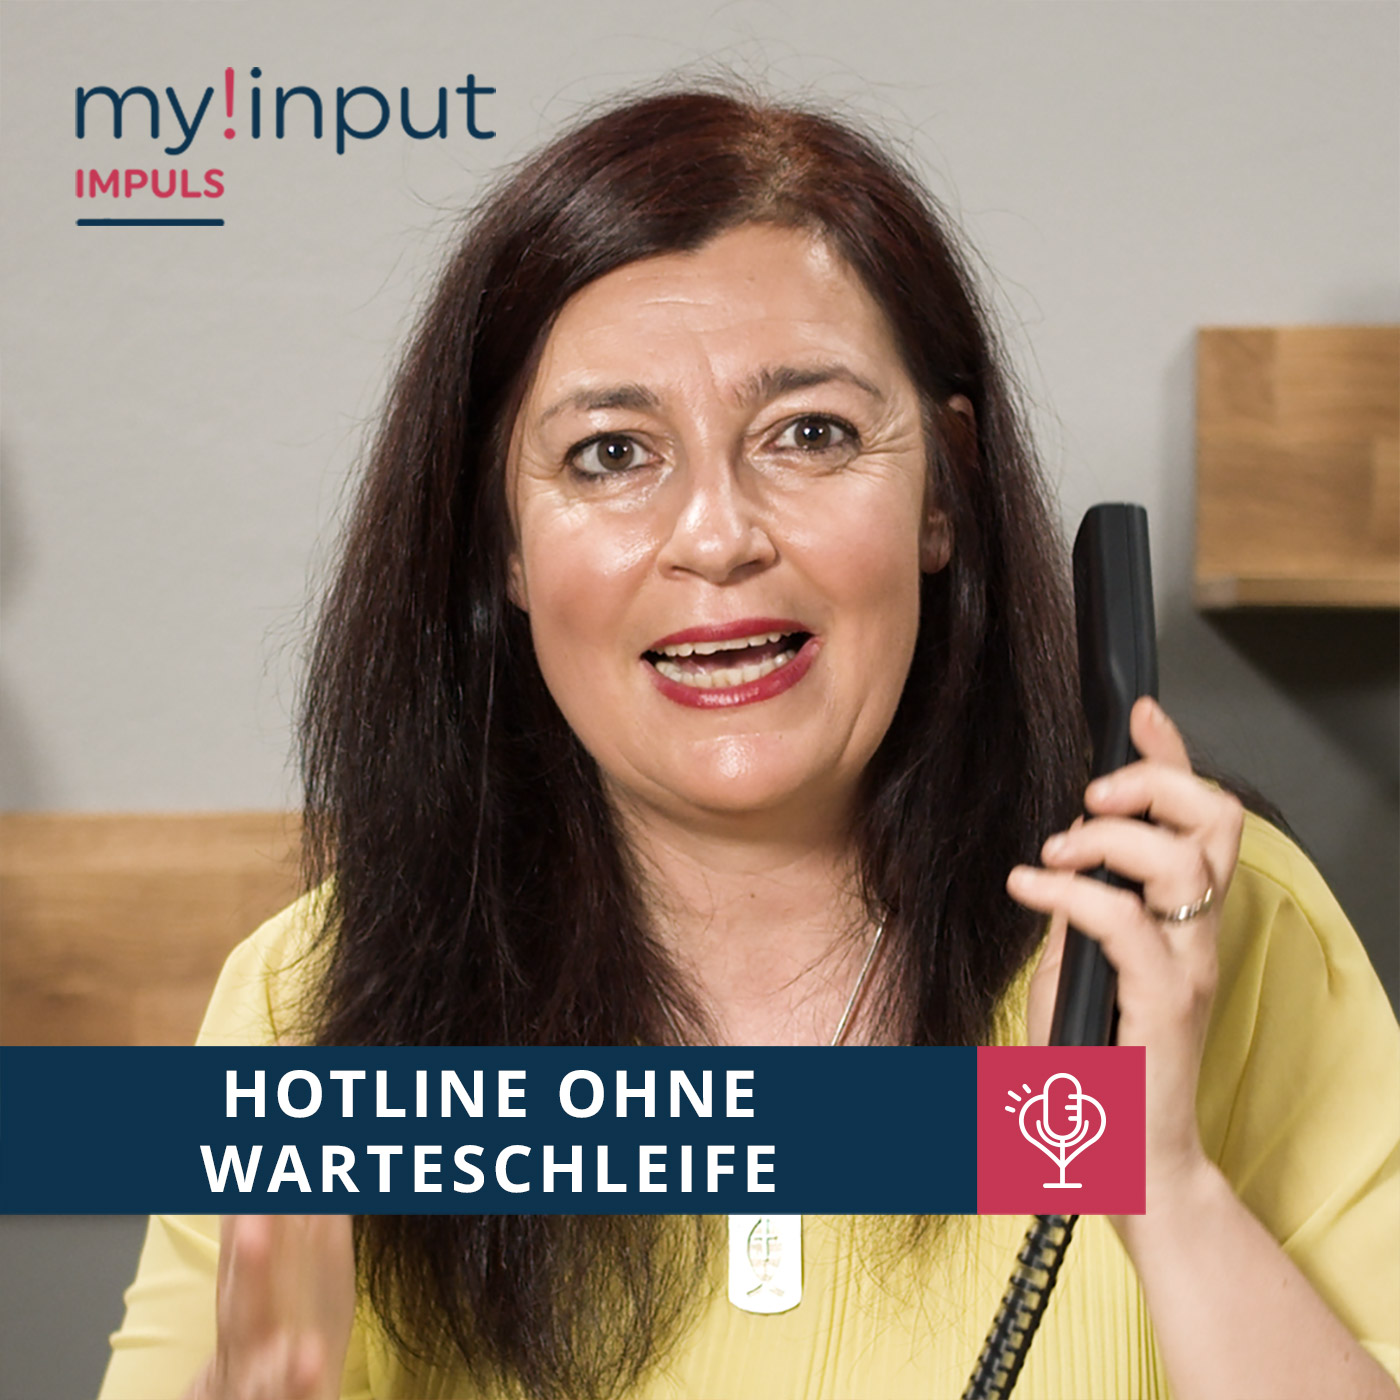 Hotline ohne Warteschleife